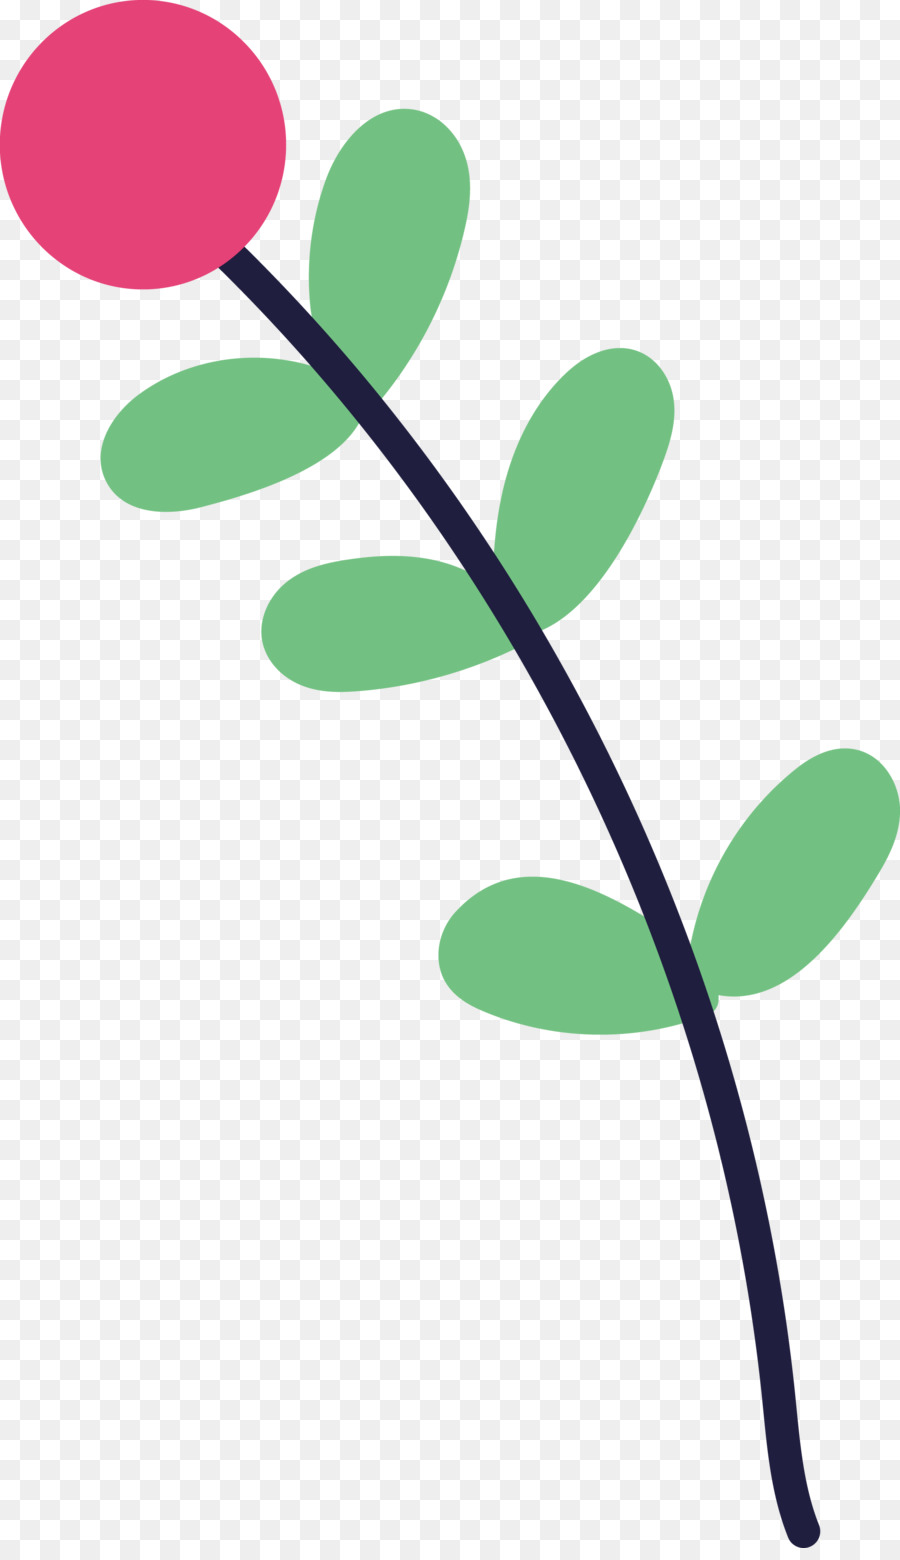 fiore verde del ramo del gambo della pianta della foglia - 